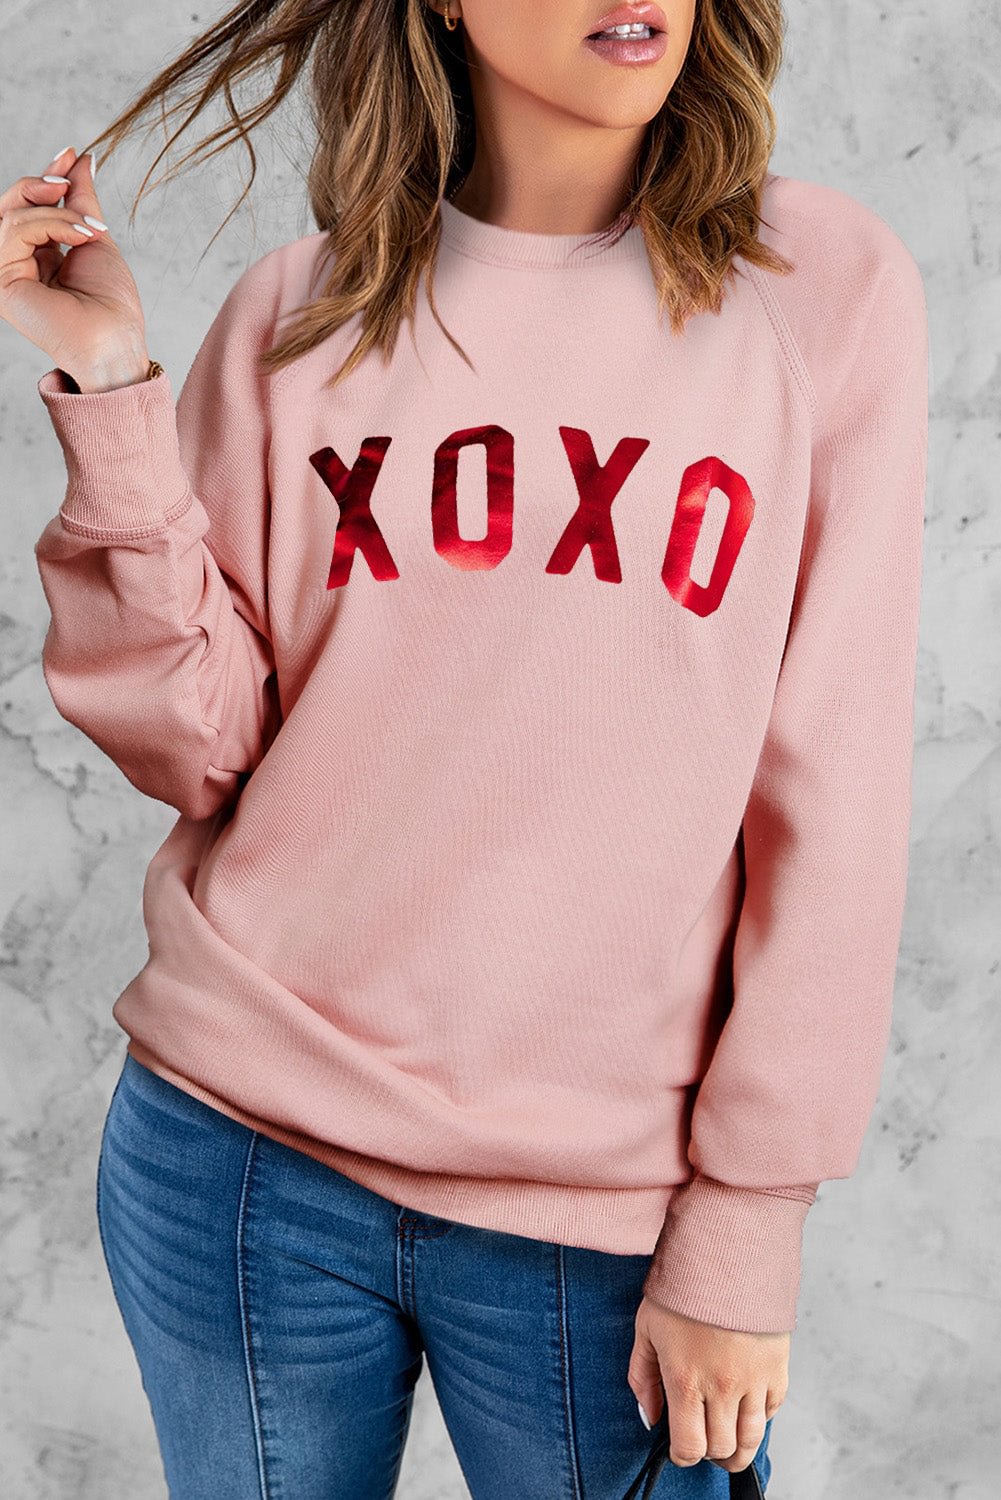 XOXO Letter Printed Pink Women's Sweatshirt